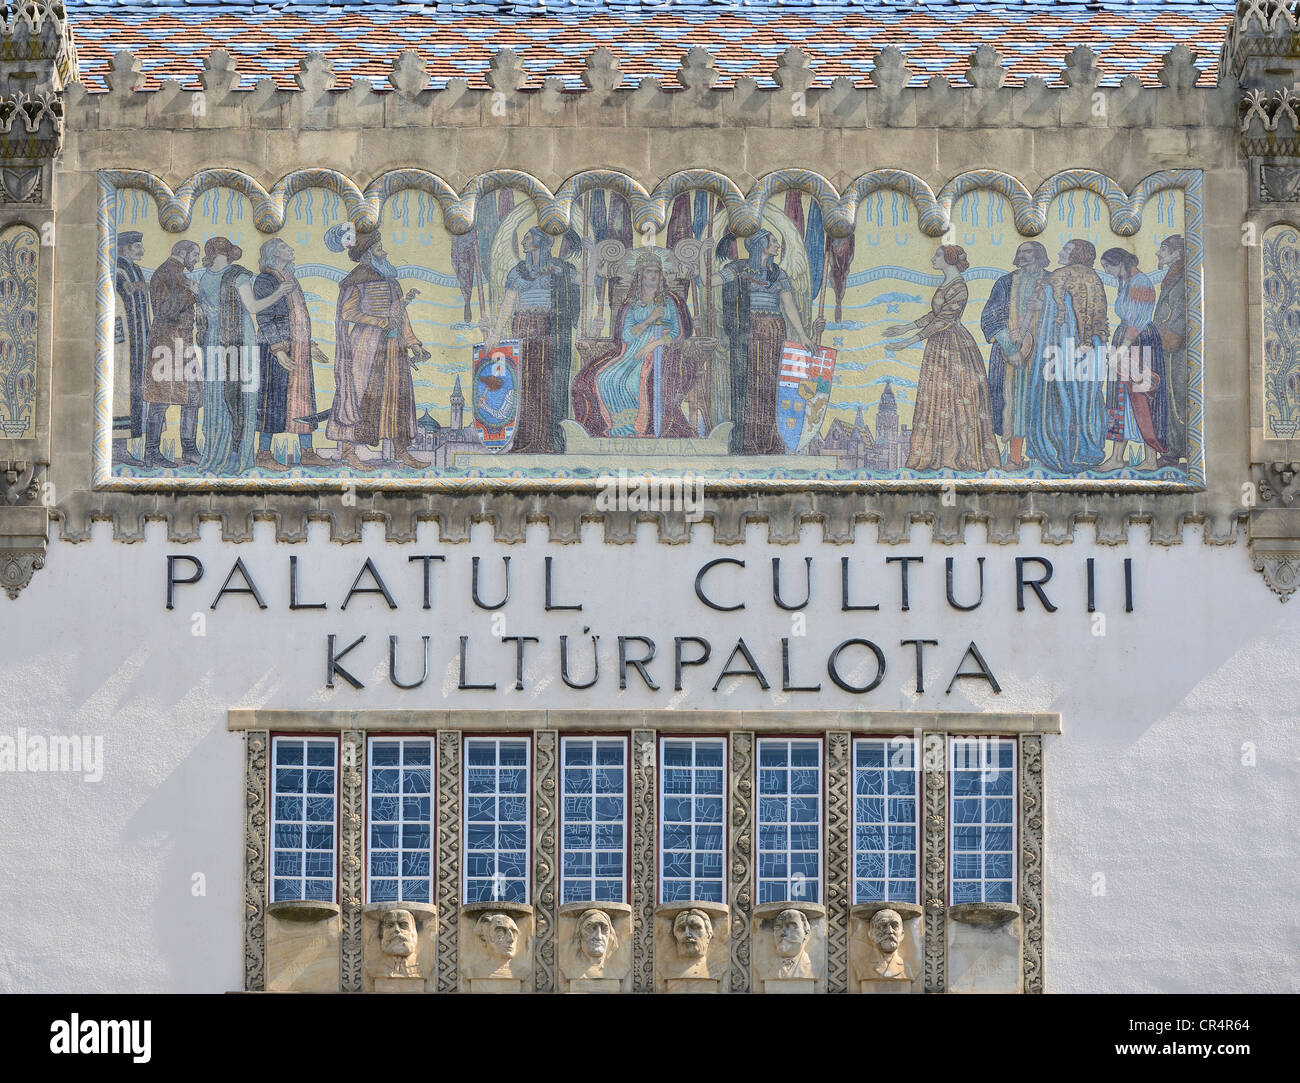 Palais de la culture de l'art nouveau, Targu Mures, mure&# 351 ; county, Transylvanie, Roumanie, Europe Banque D'Images